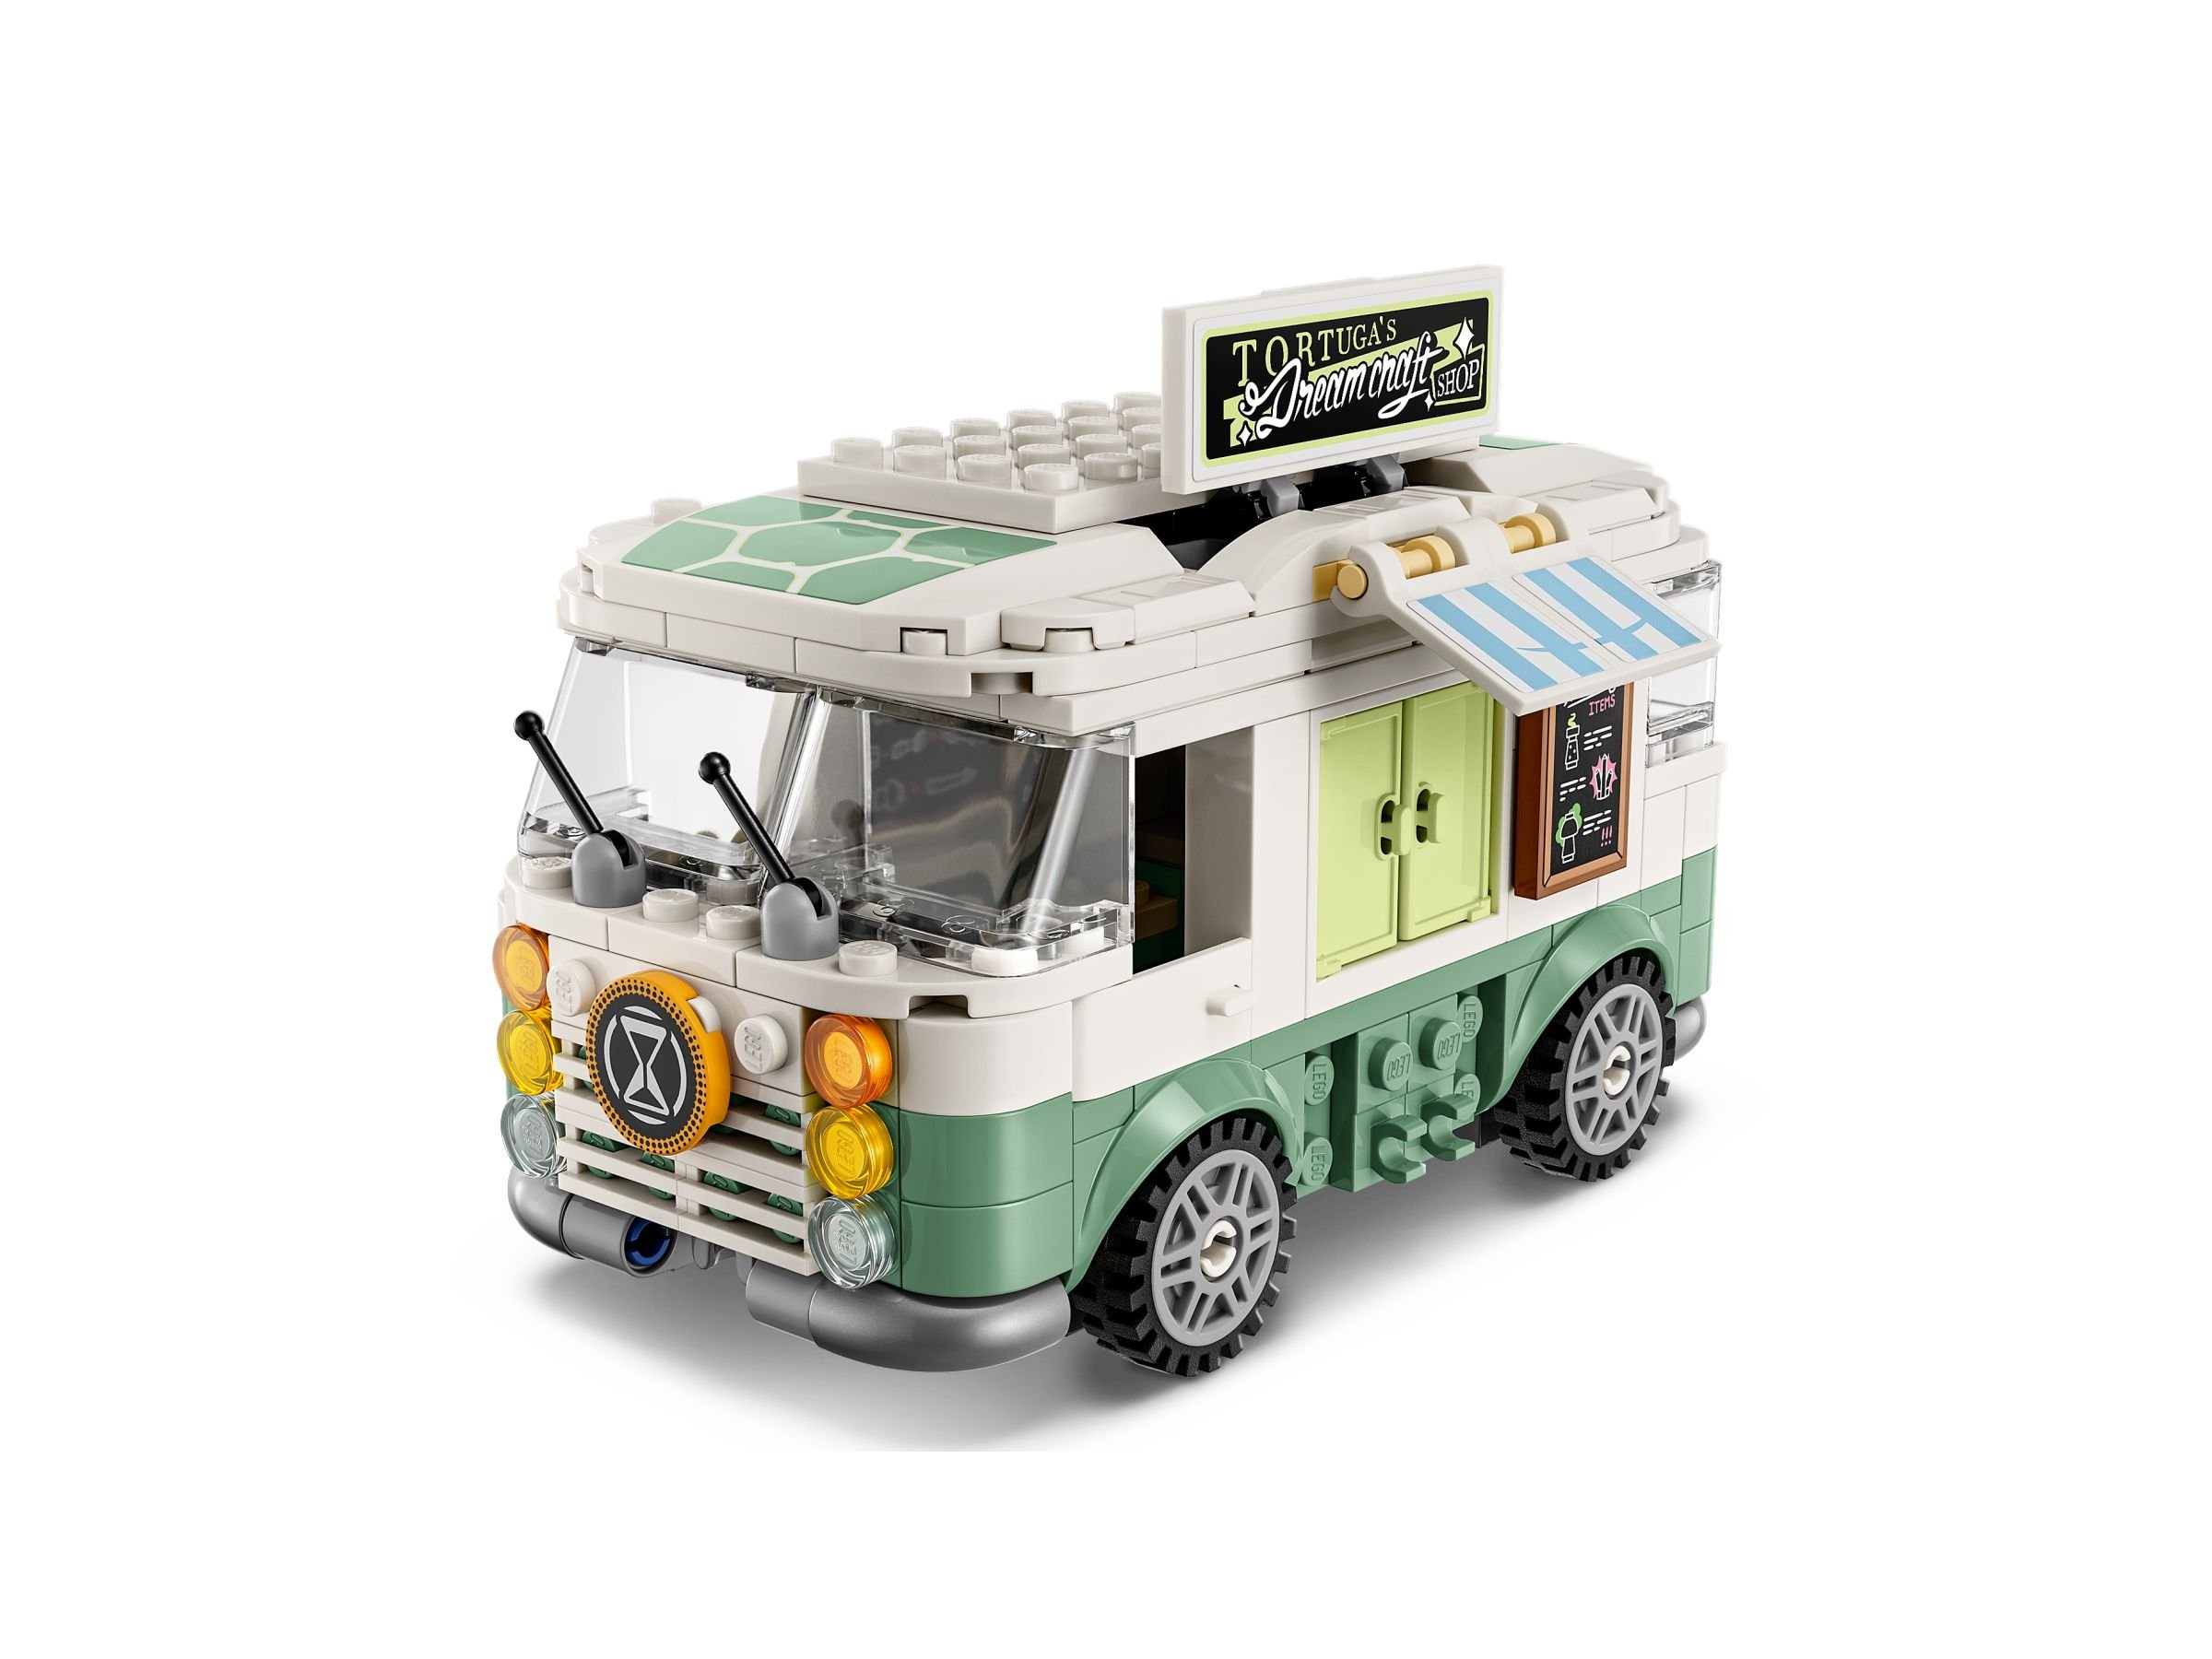 LEGO Dreamzzz 5008137 Traumwelt Paket LEGO_71456_alt6.jpg